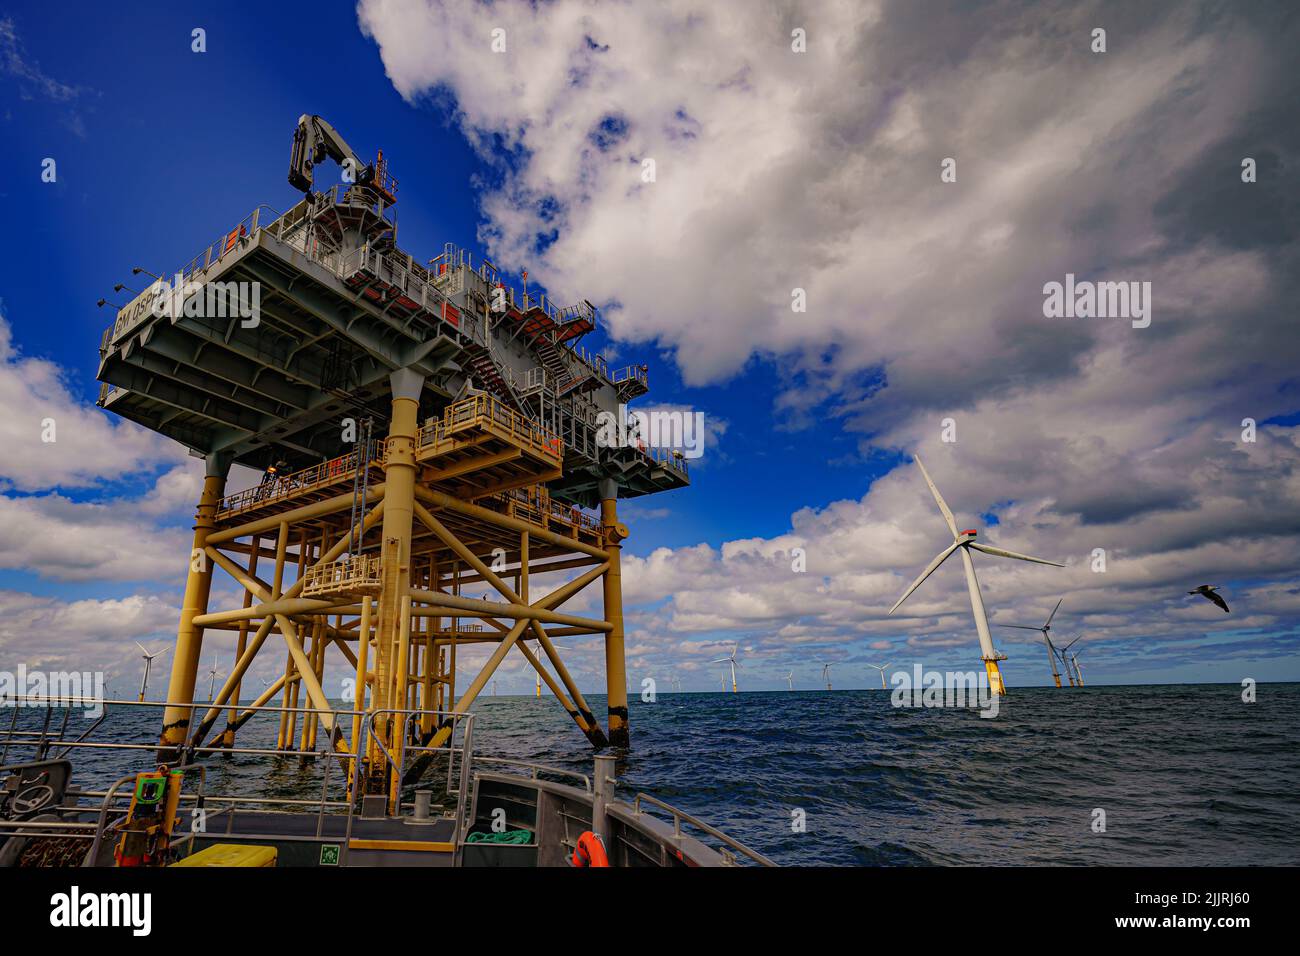 Gwynt y Mor de RWE, el 2nd parque eólico marino más grande del mundo, situado a ocho millas de la costa de Liverpool Bay, frente a la costa del norte de Gales. Fecha de la foto: Martes 26 de julio de 2022. Foto de stock